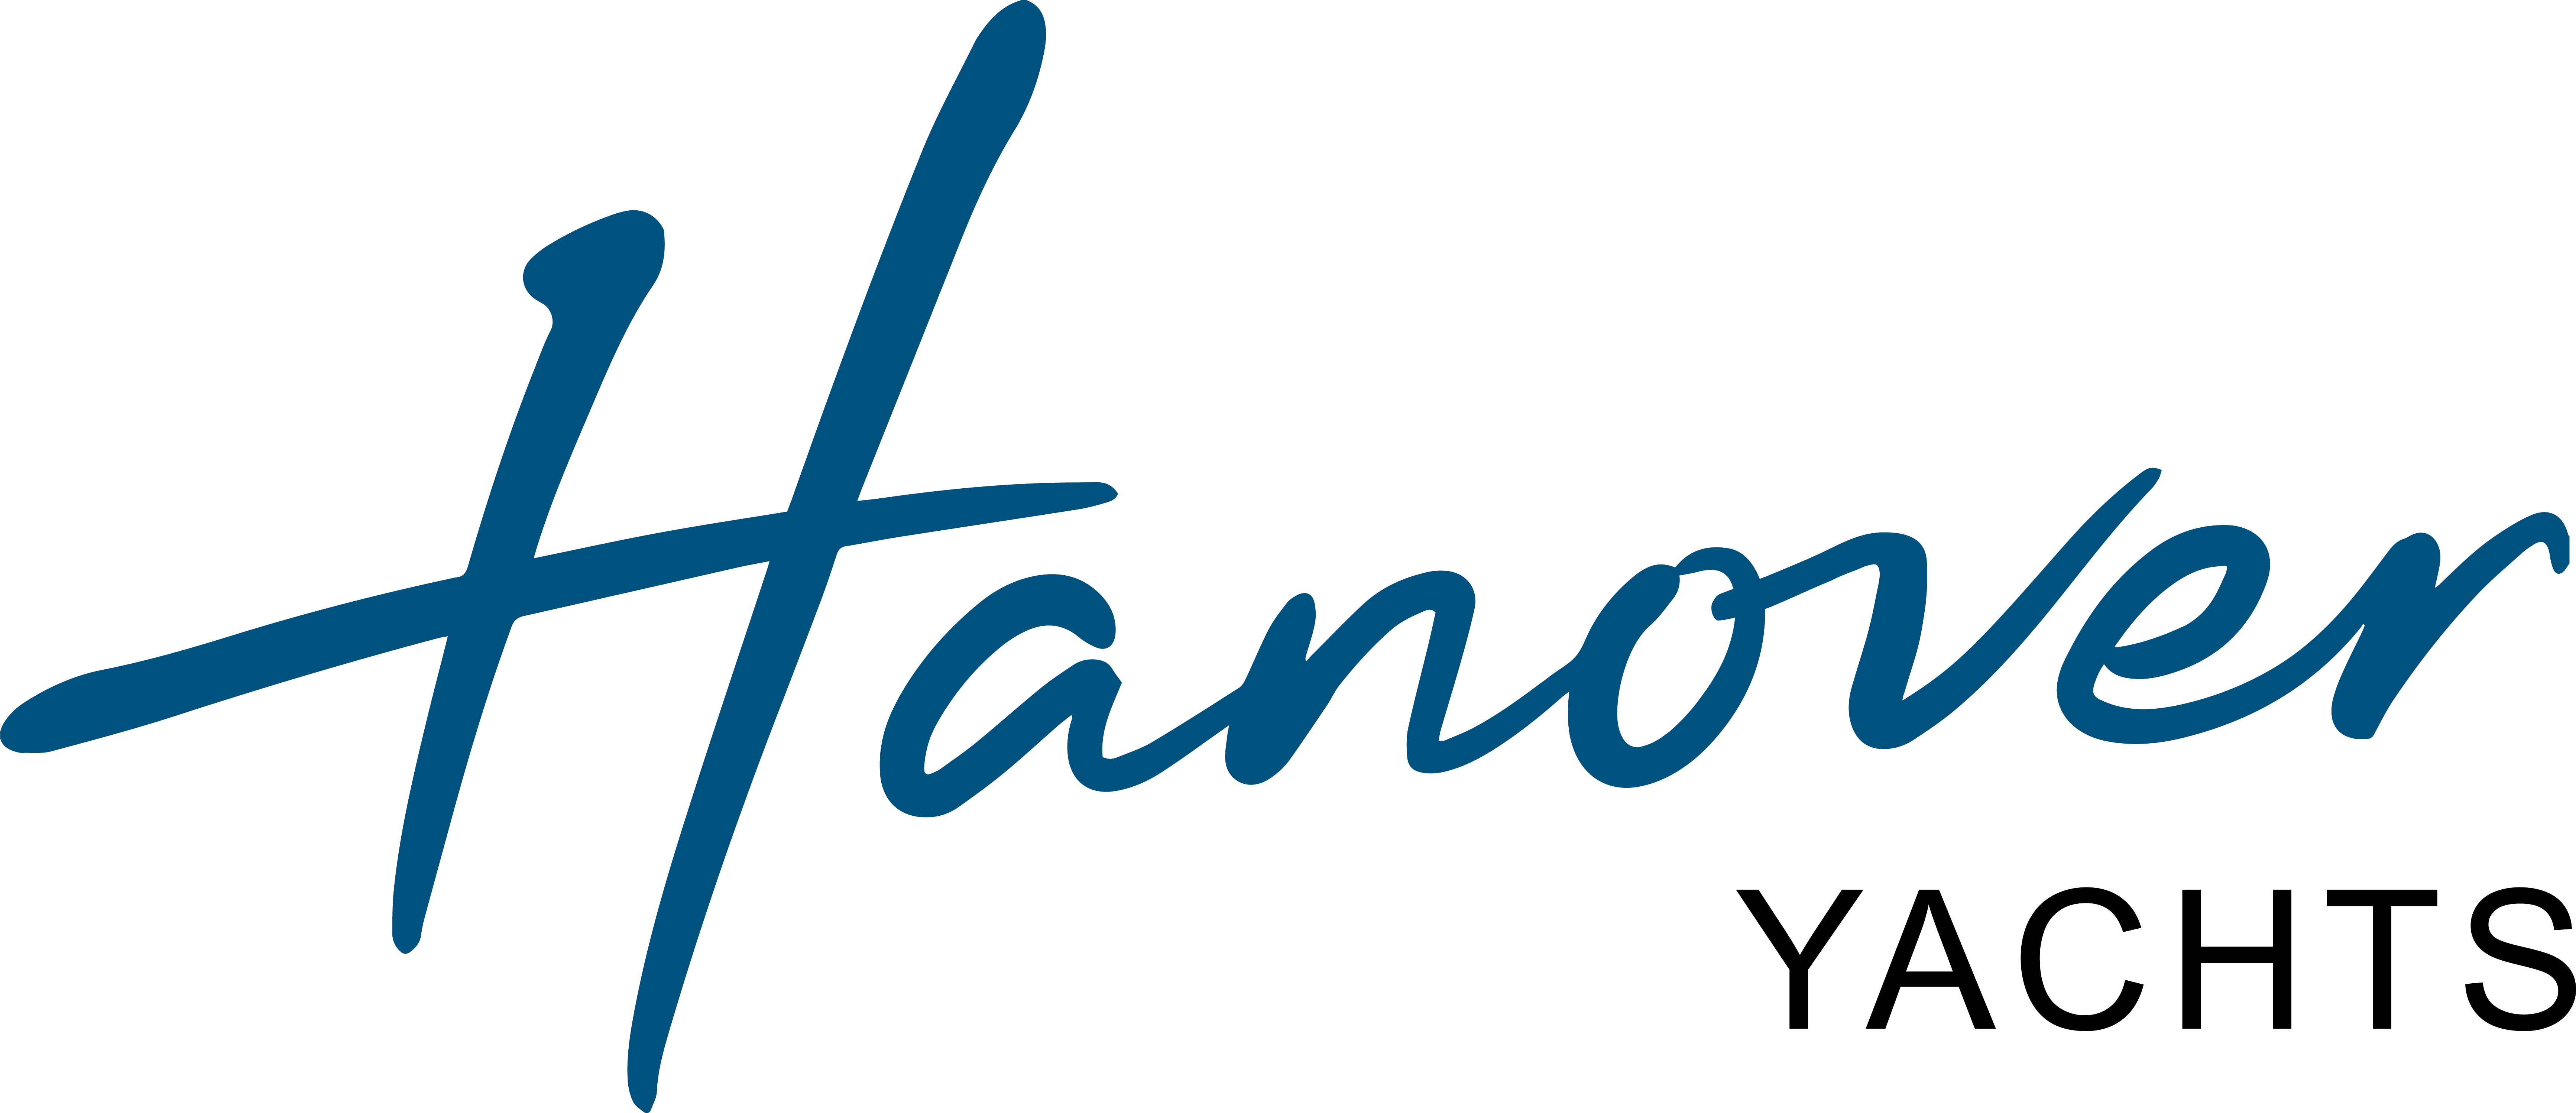 Hanover brand logo